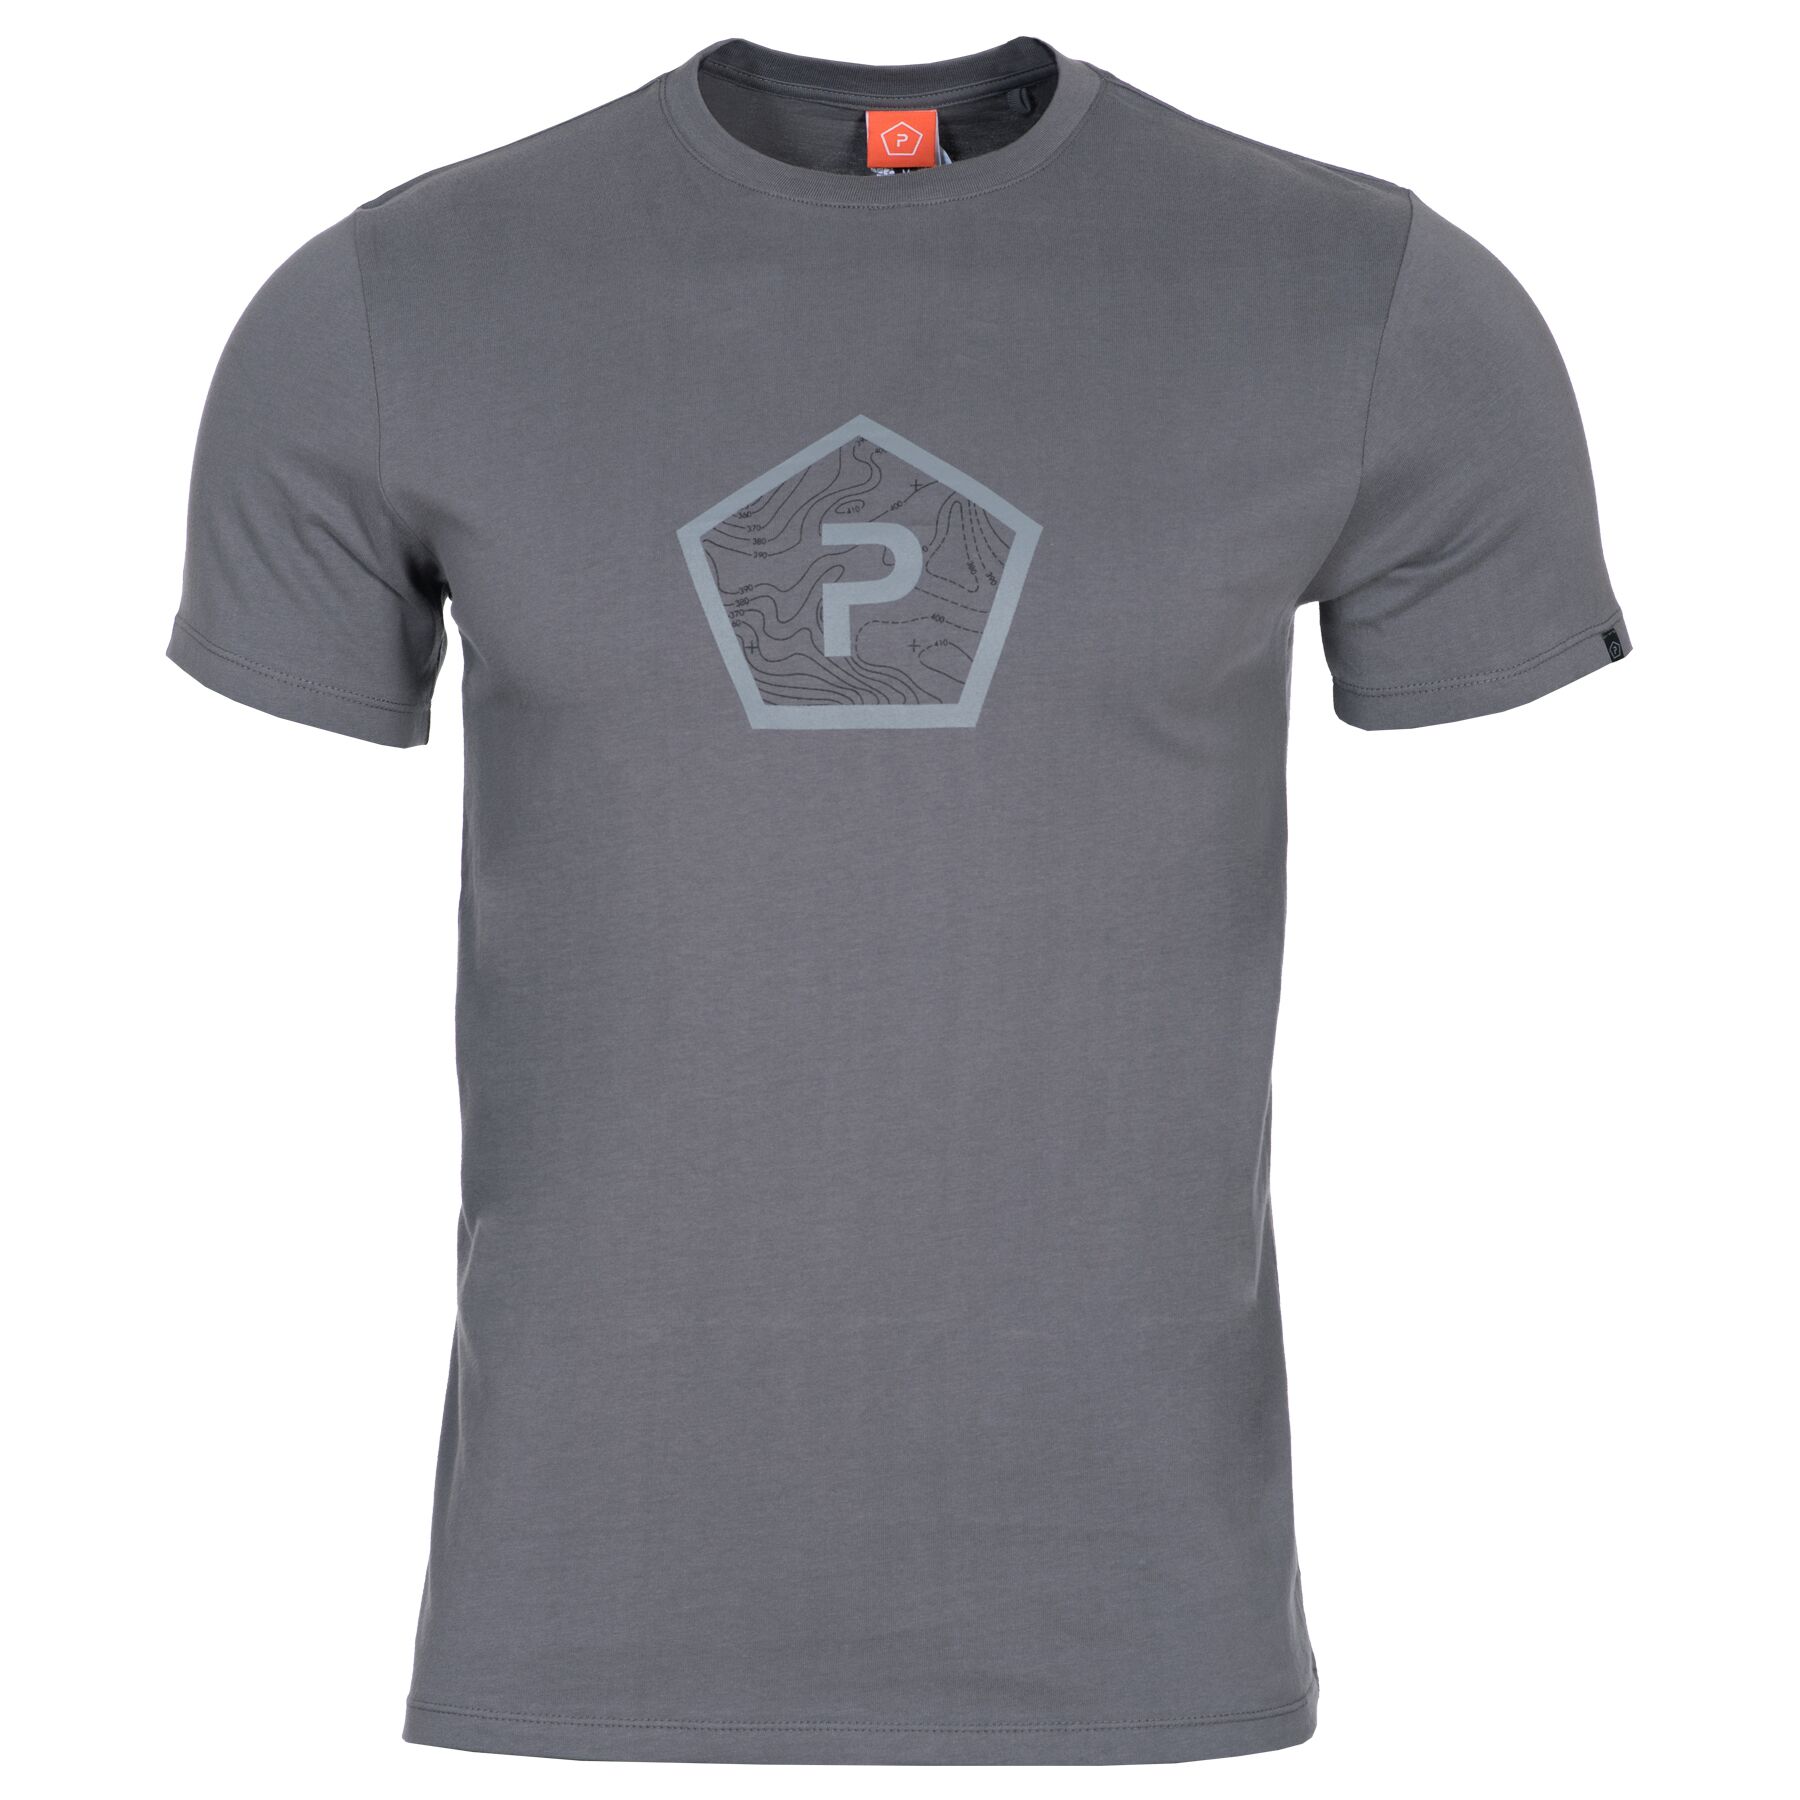 Tričko Pentagon Shape s potlačou - šedé